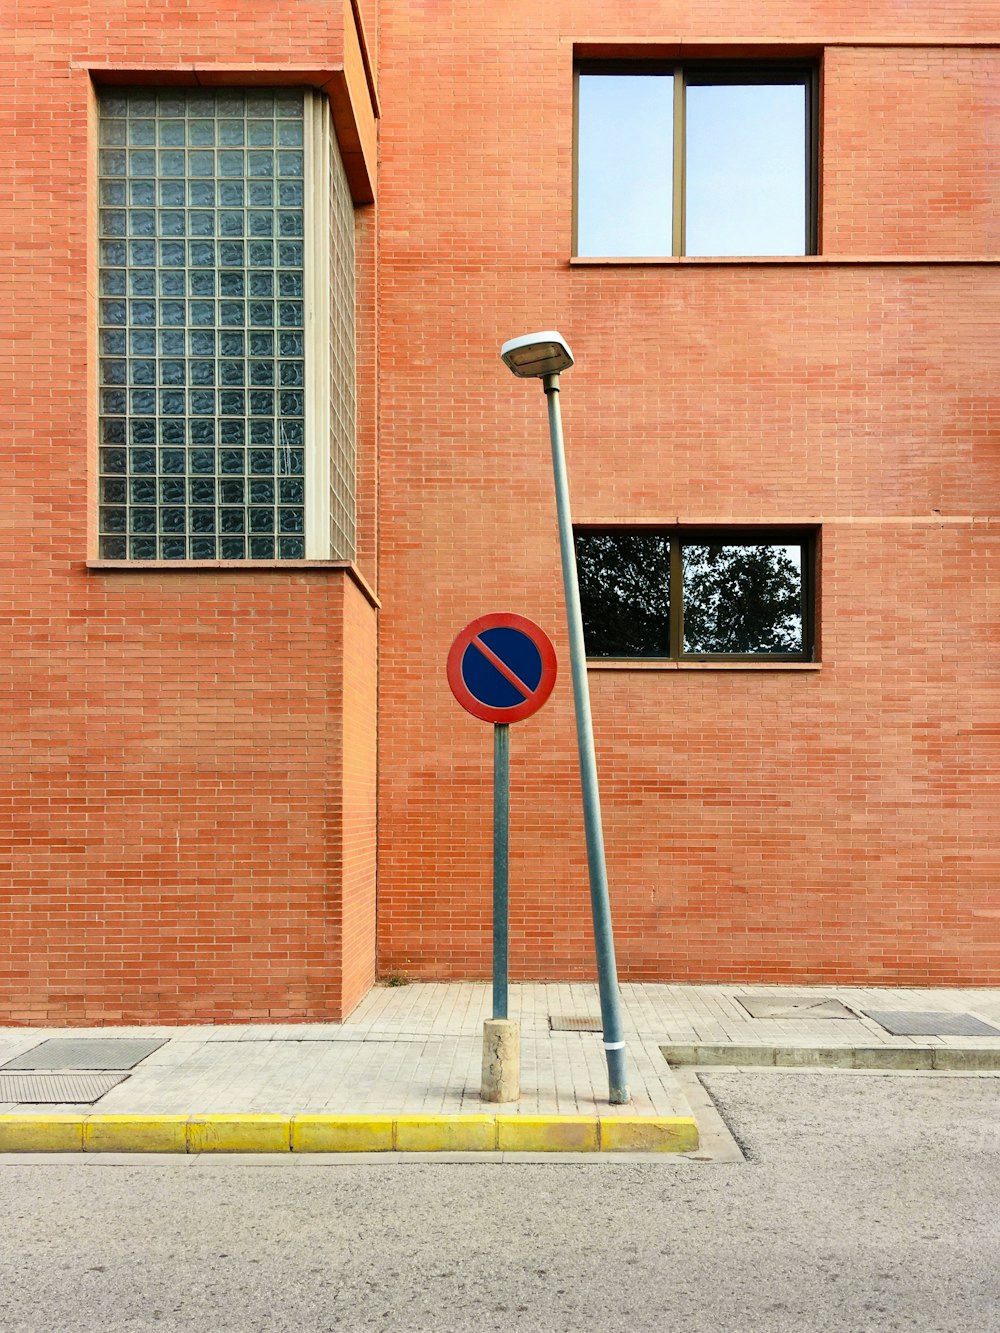 レンガ造りの建物の前に駐車禁止の看板